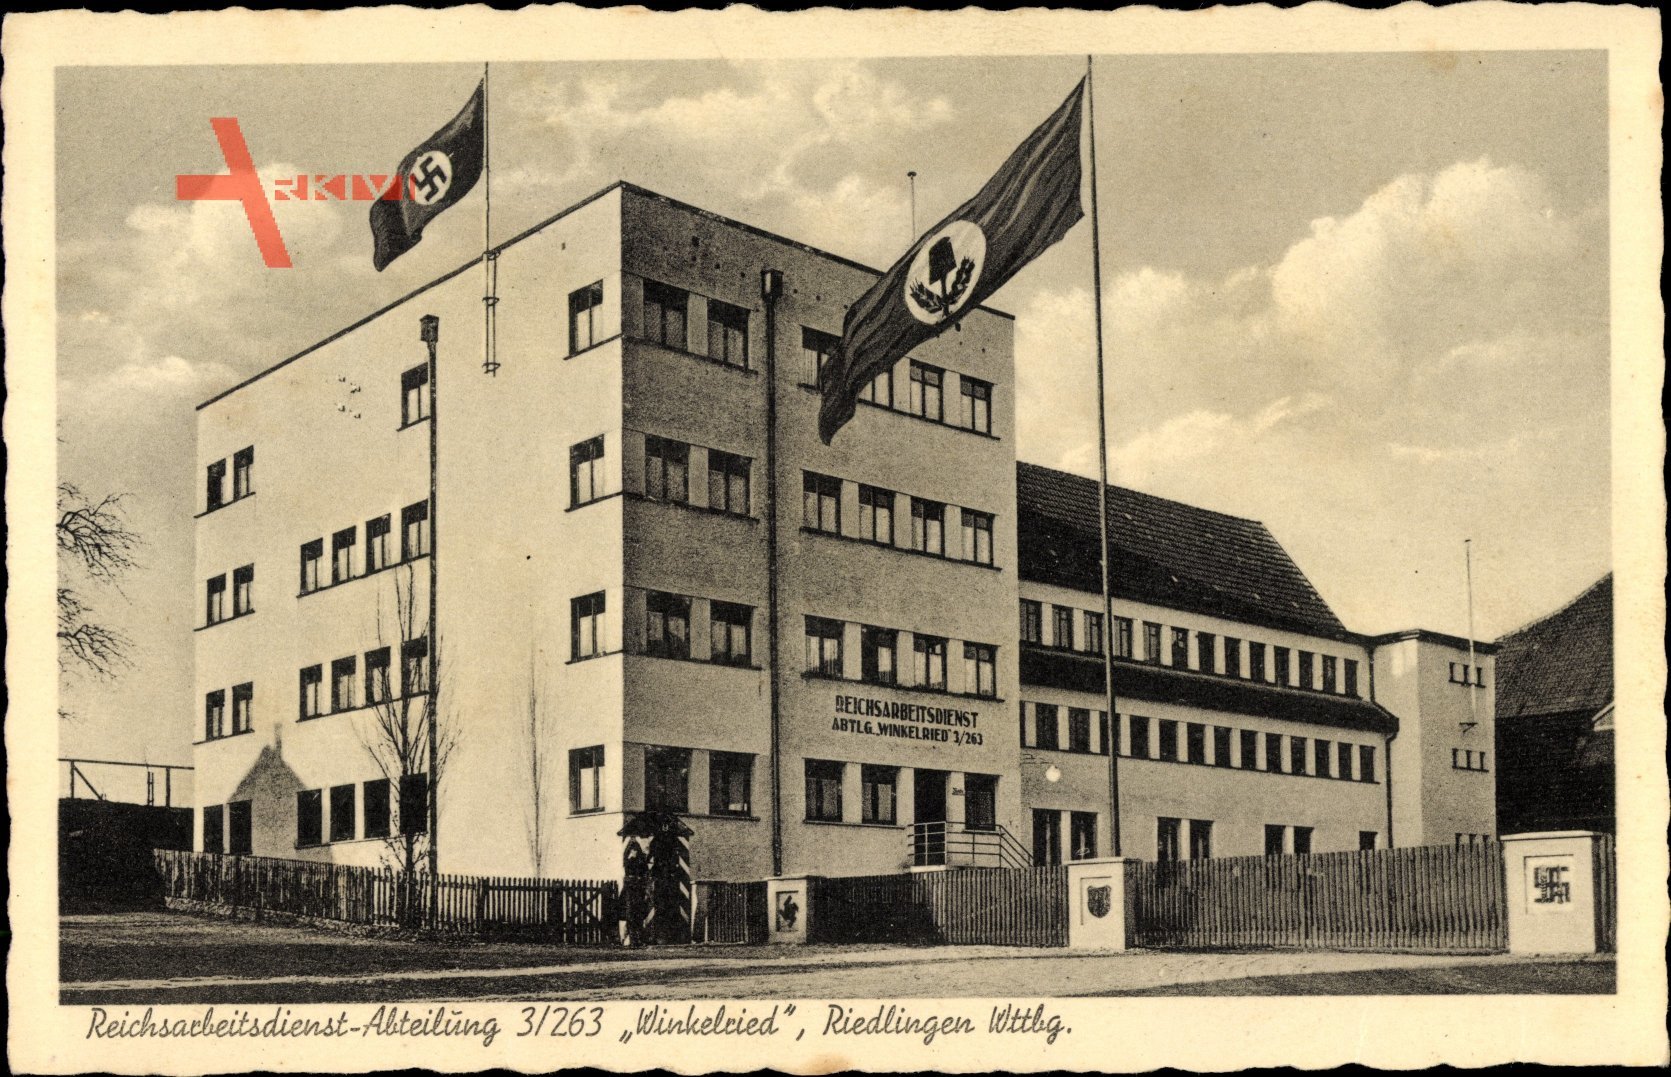 Riedlingen in der Schwäbischen Alb, Reichsarbeitsdienst Abteilung 3/263 Winkelried